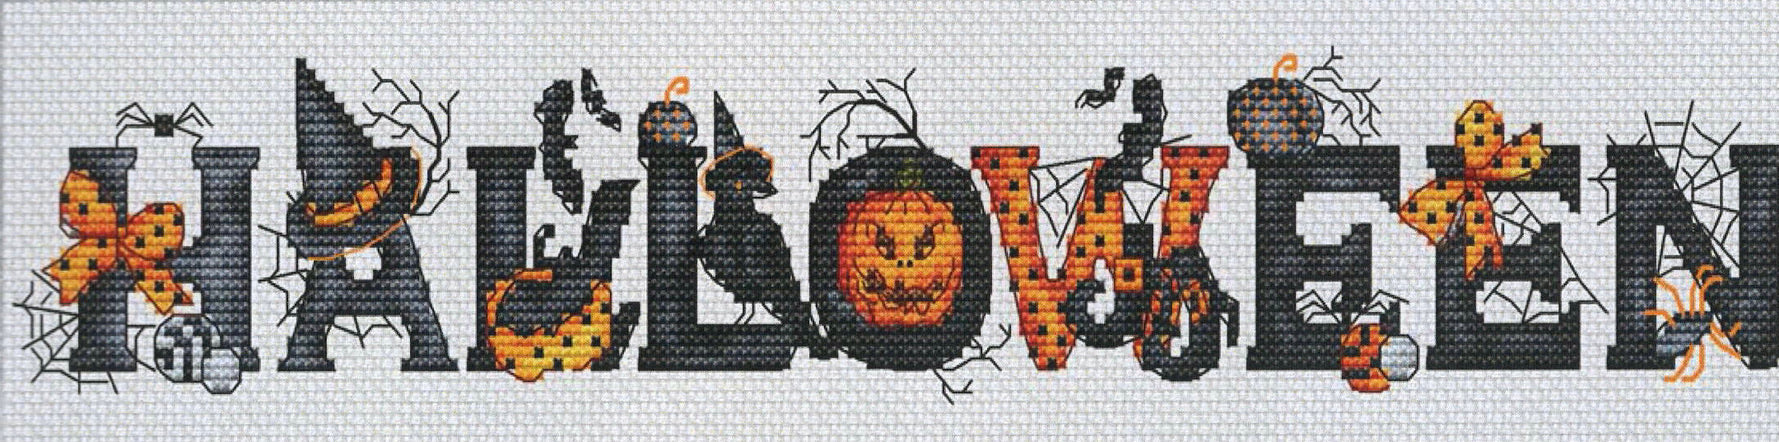 Halloween Sampler - Les Petites Croix de Lucie - Cross Stitch Pattern